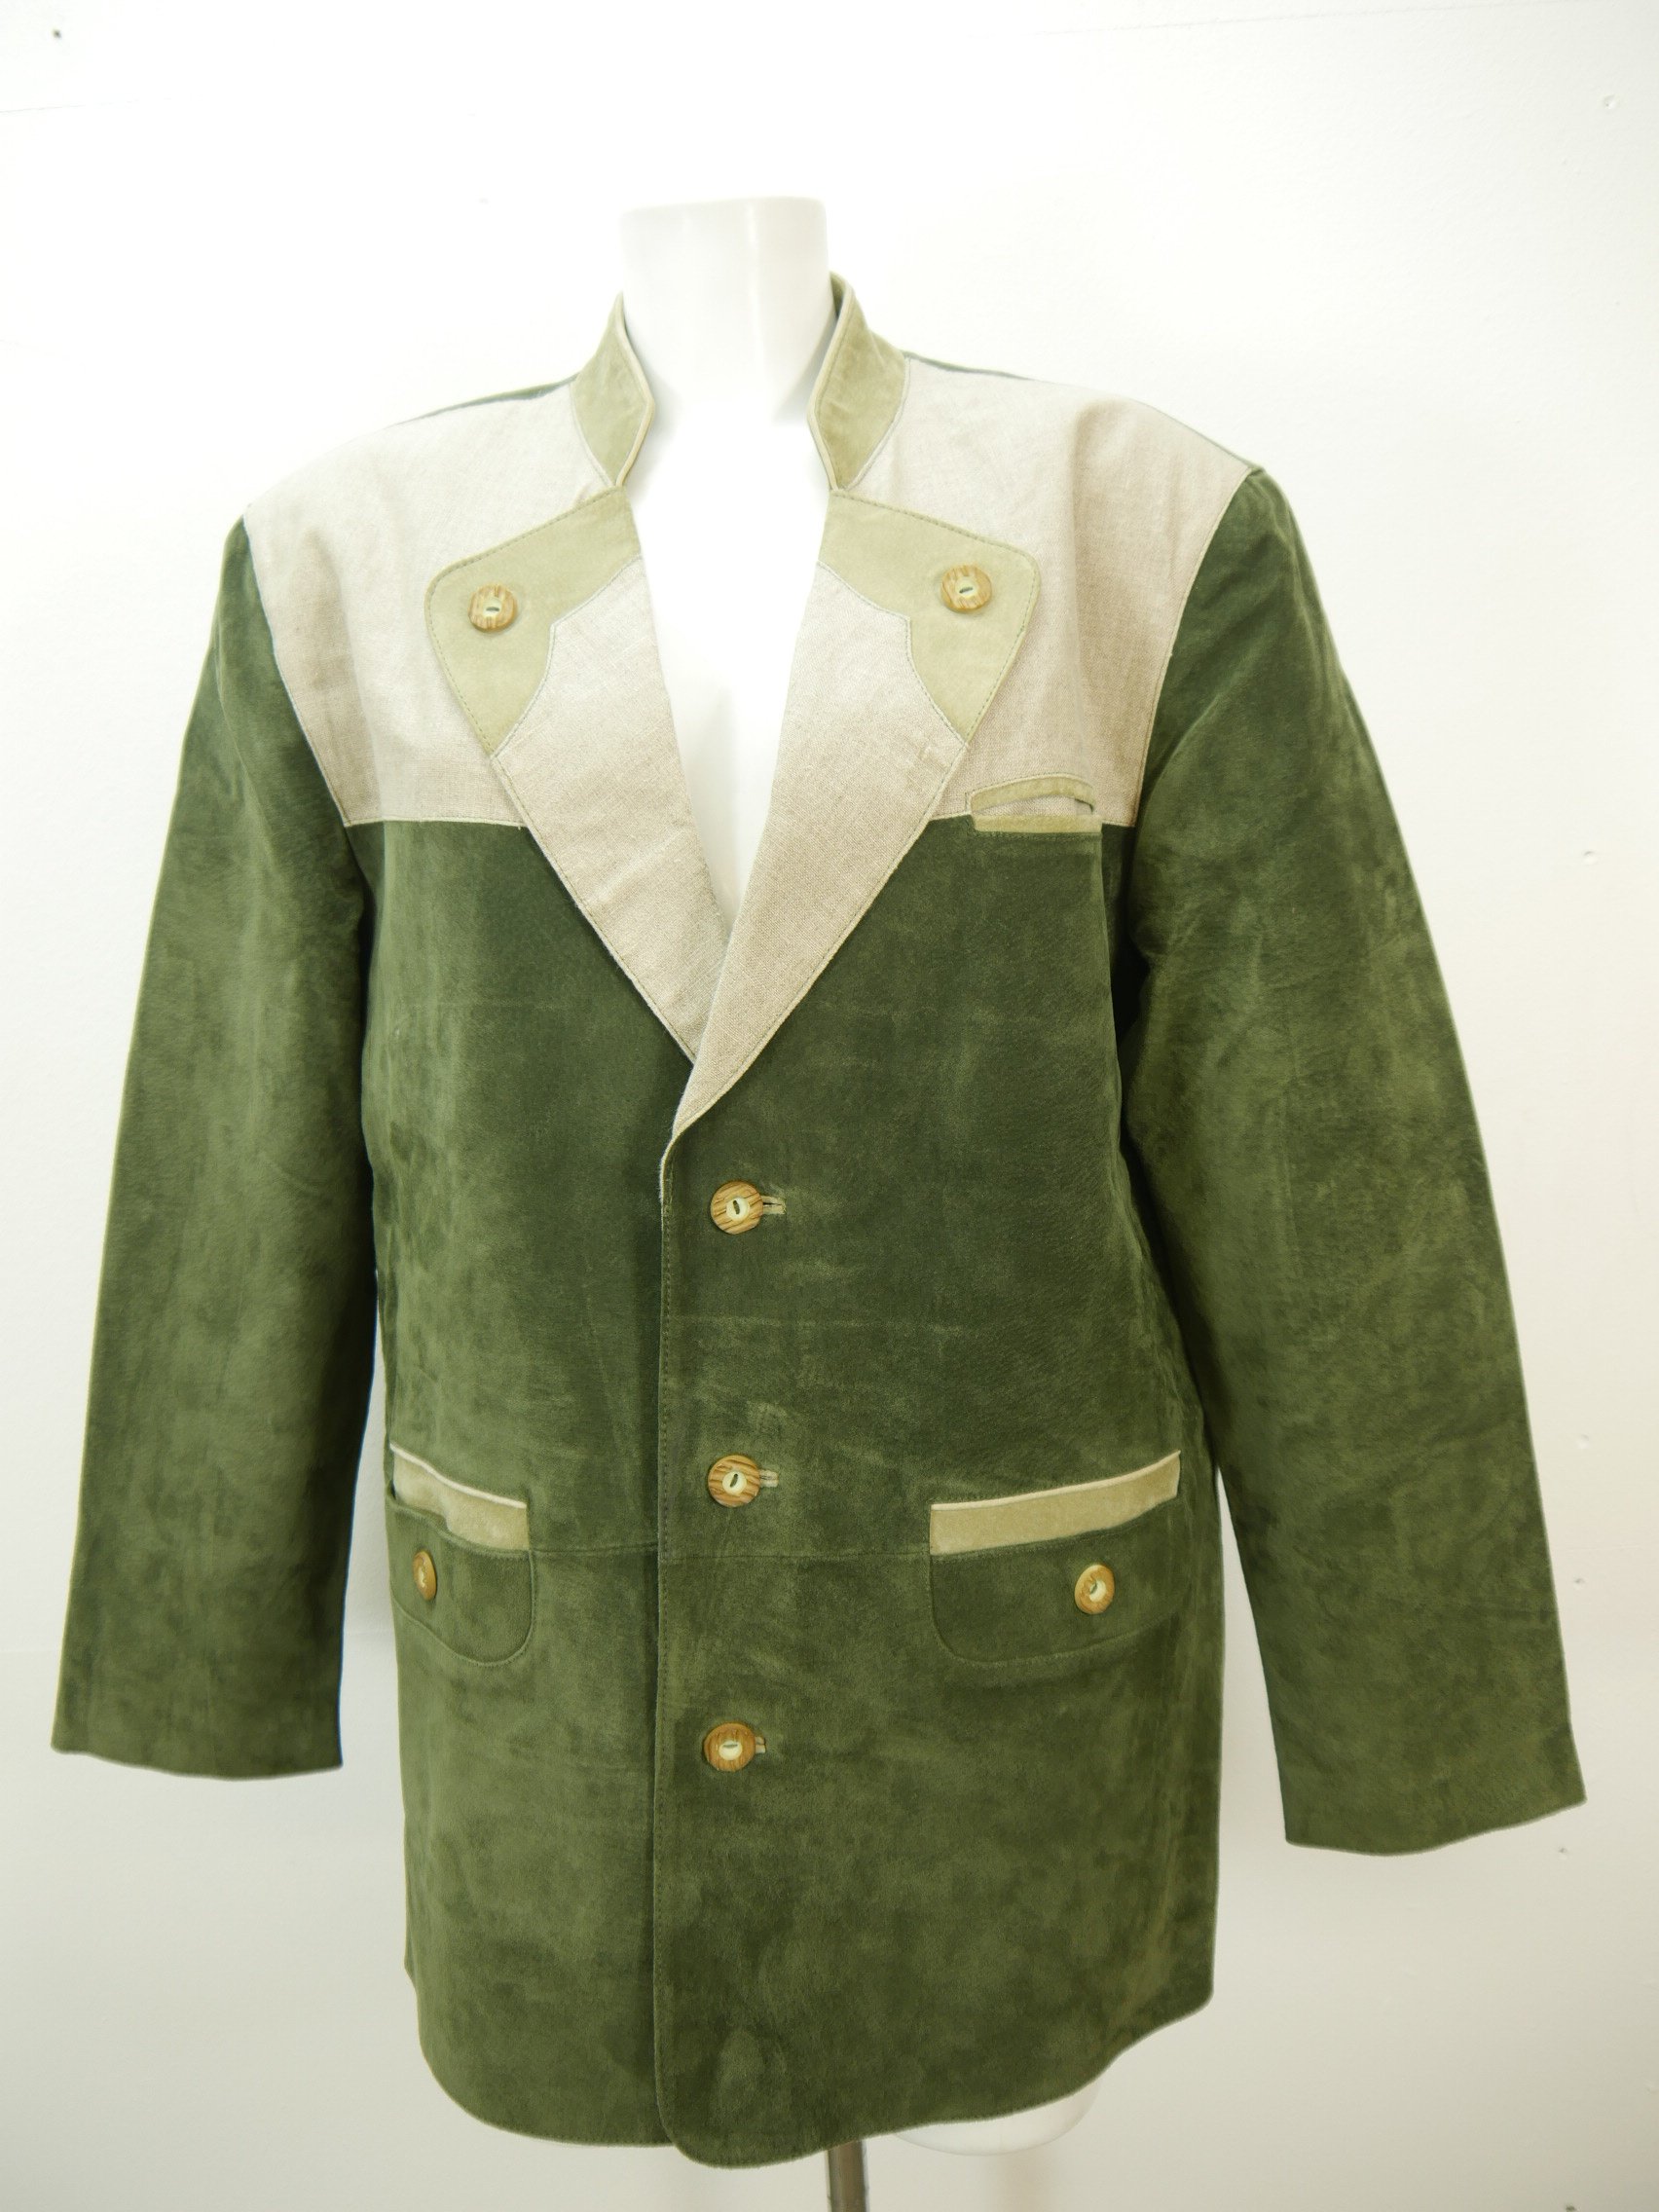 Neuwertig aus Leder und Leinen in grün Herren Trachten Jacke Gr.48